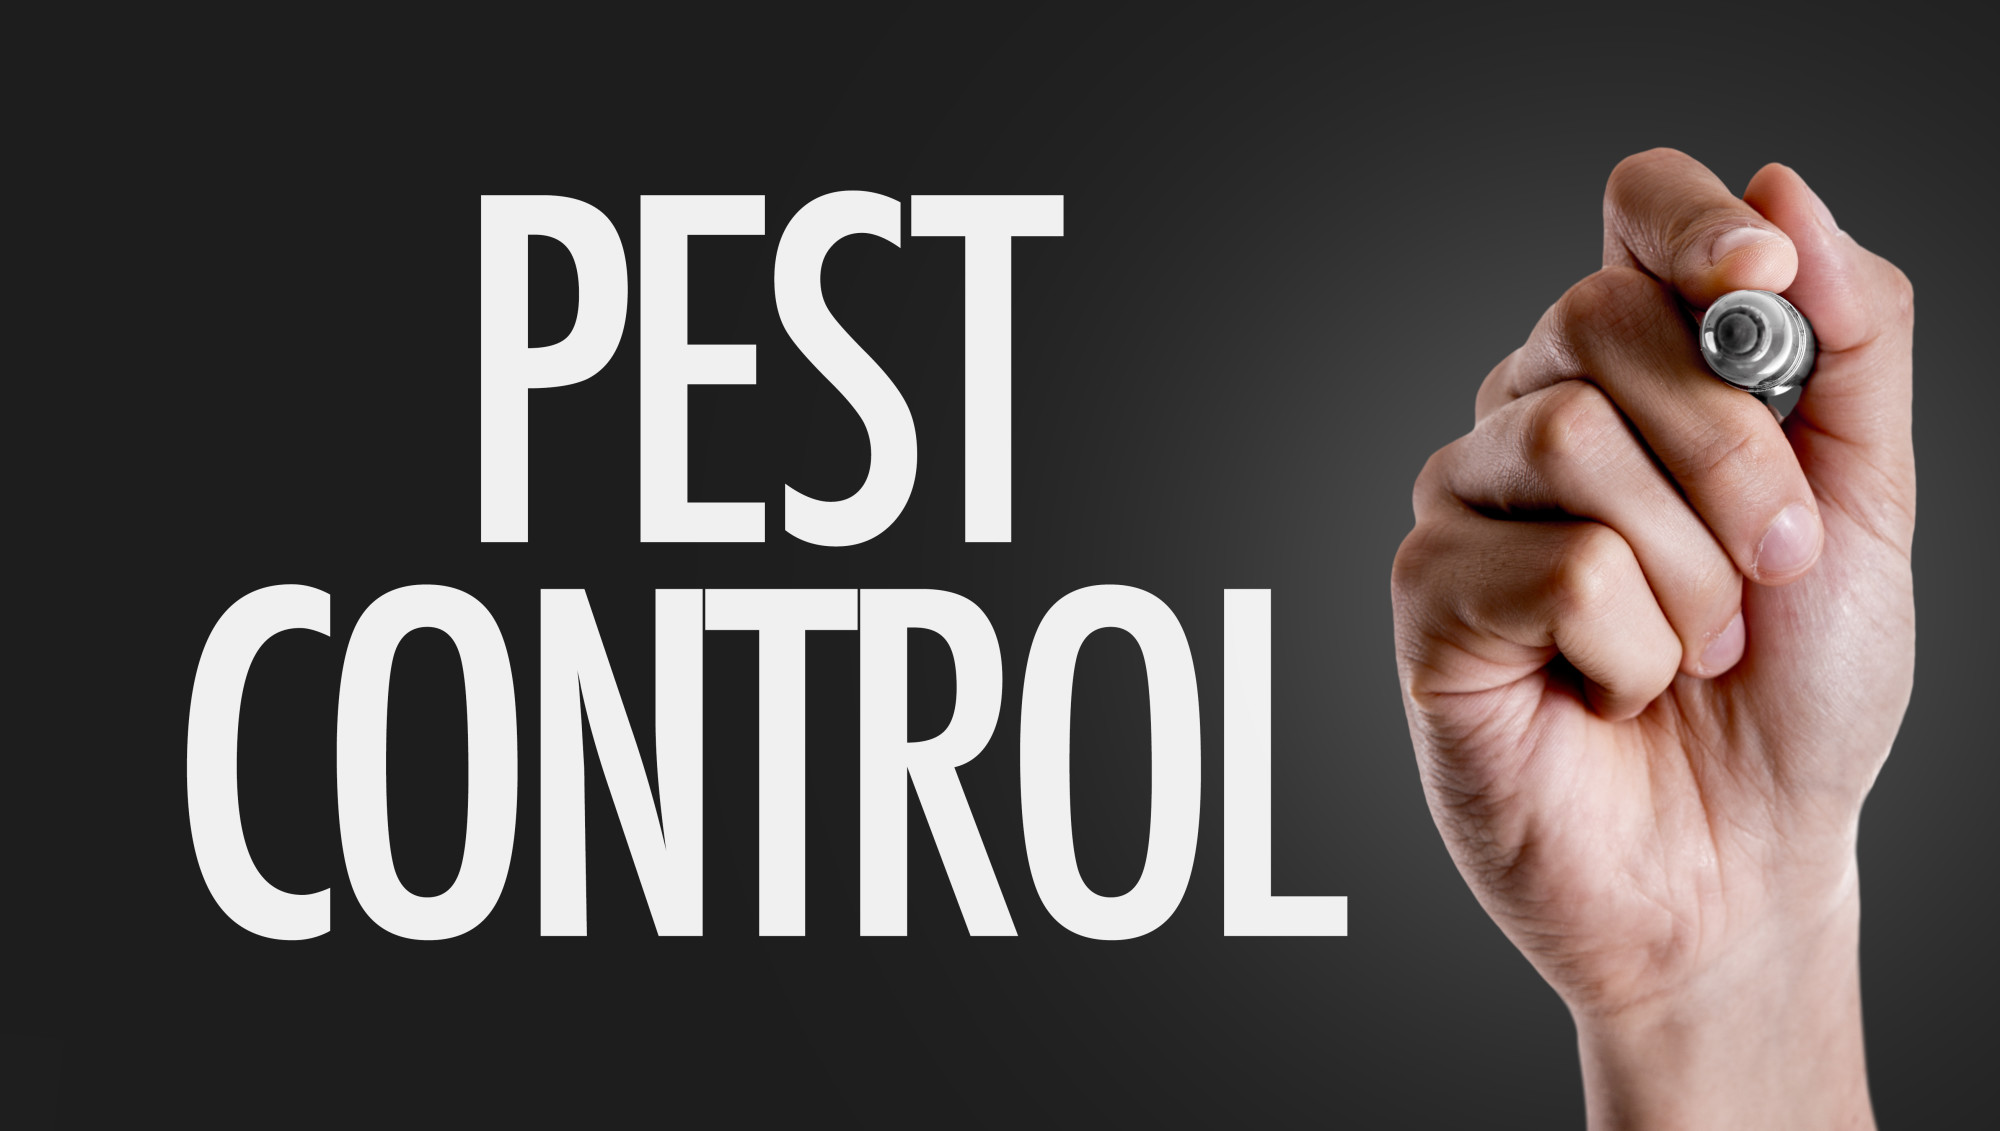 quarterly pest control service